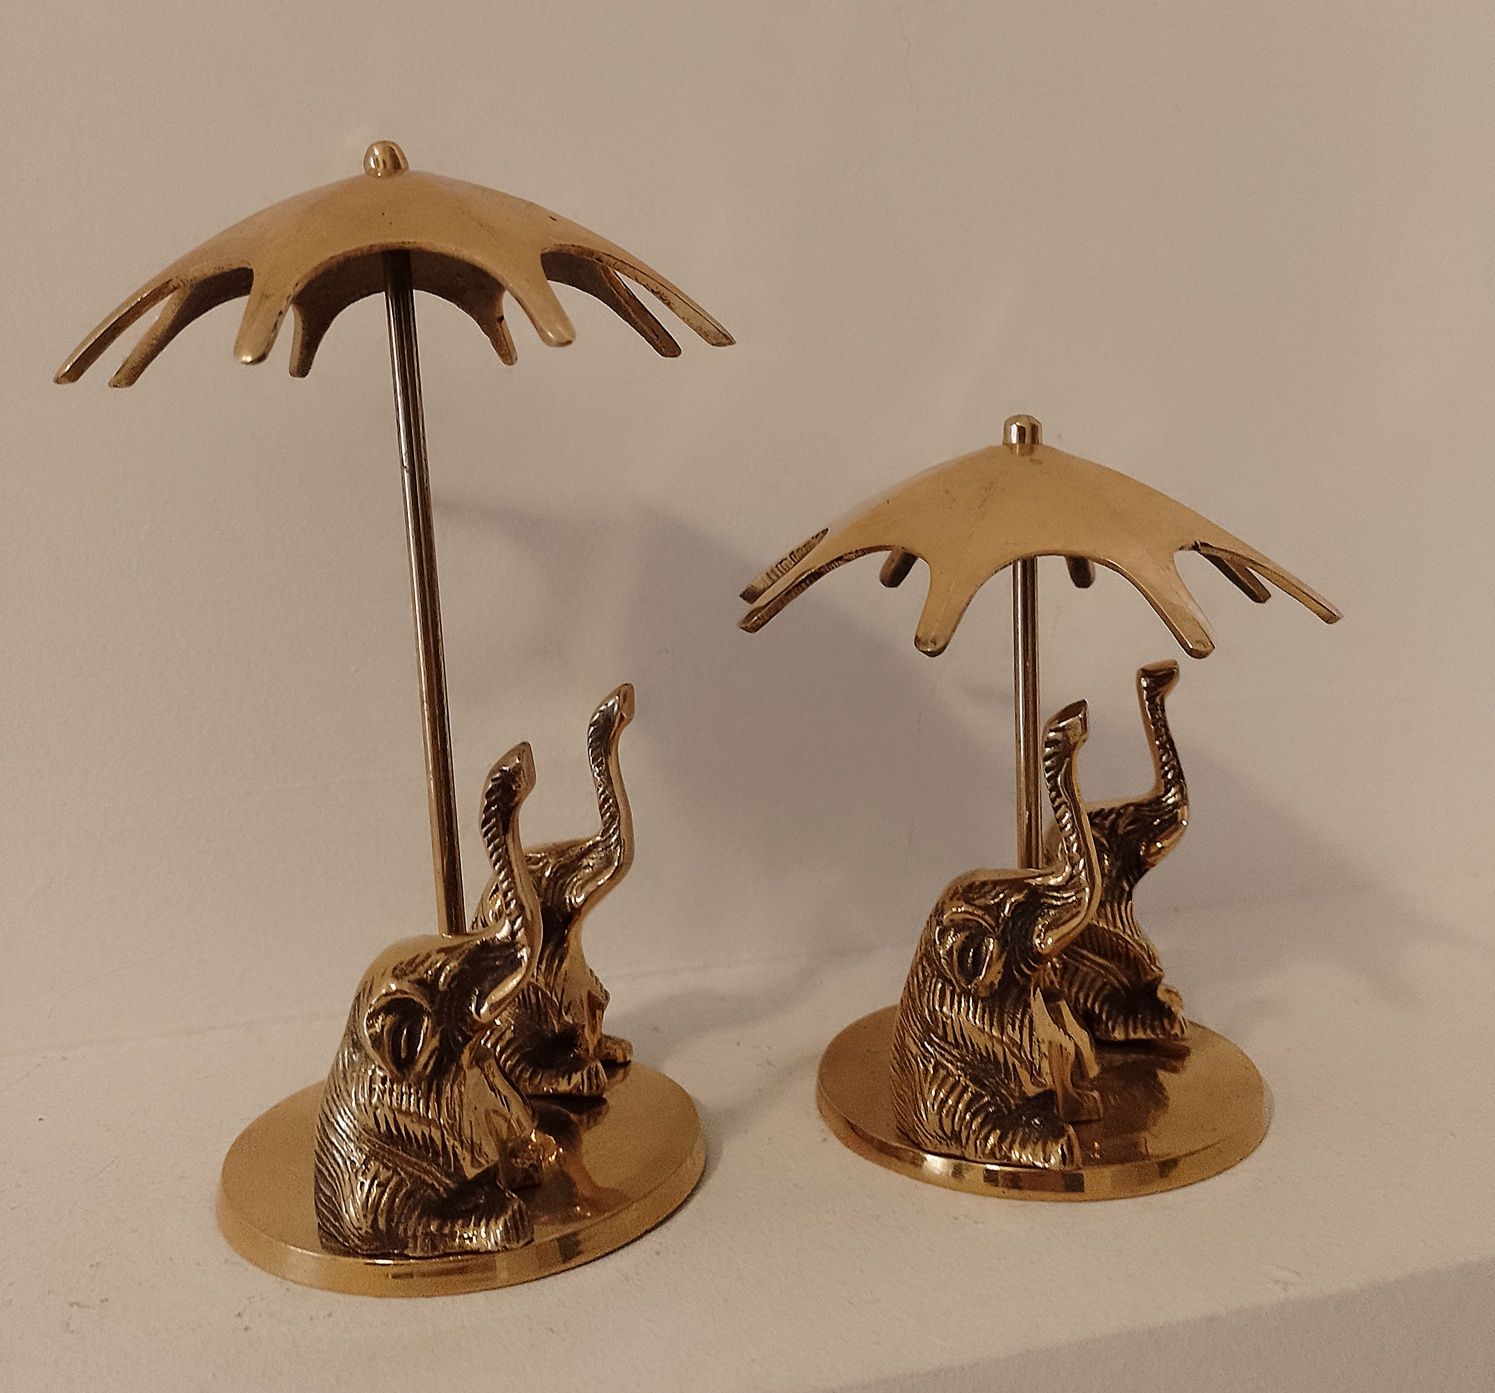 Set elefanti sub umbrelute din bronz,piese cu o lucrătură de o foarte